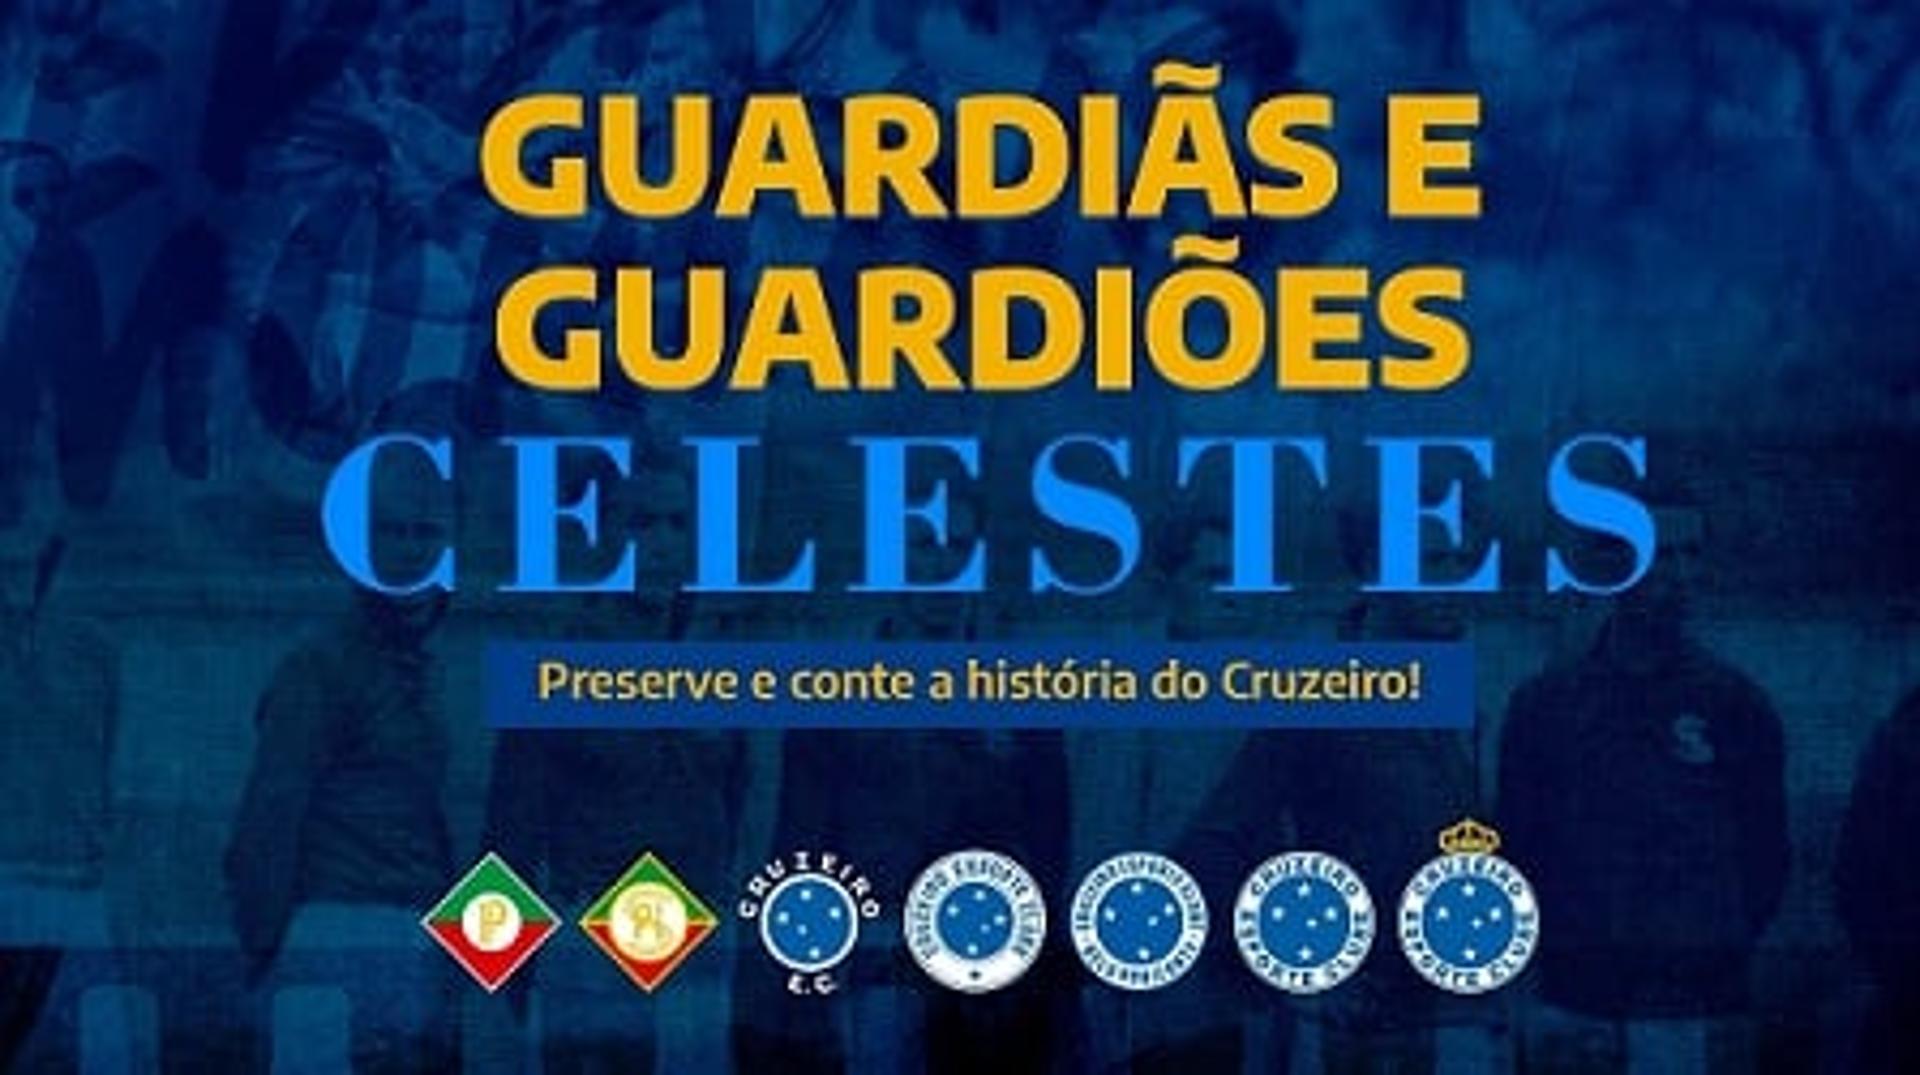 O Cruzeiro criou o projeto para recuperar relíquias de sua história